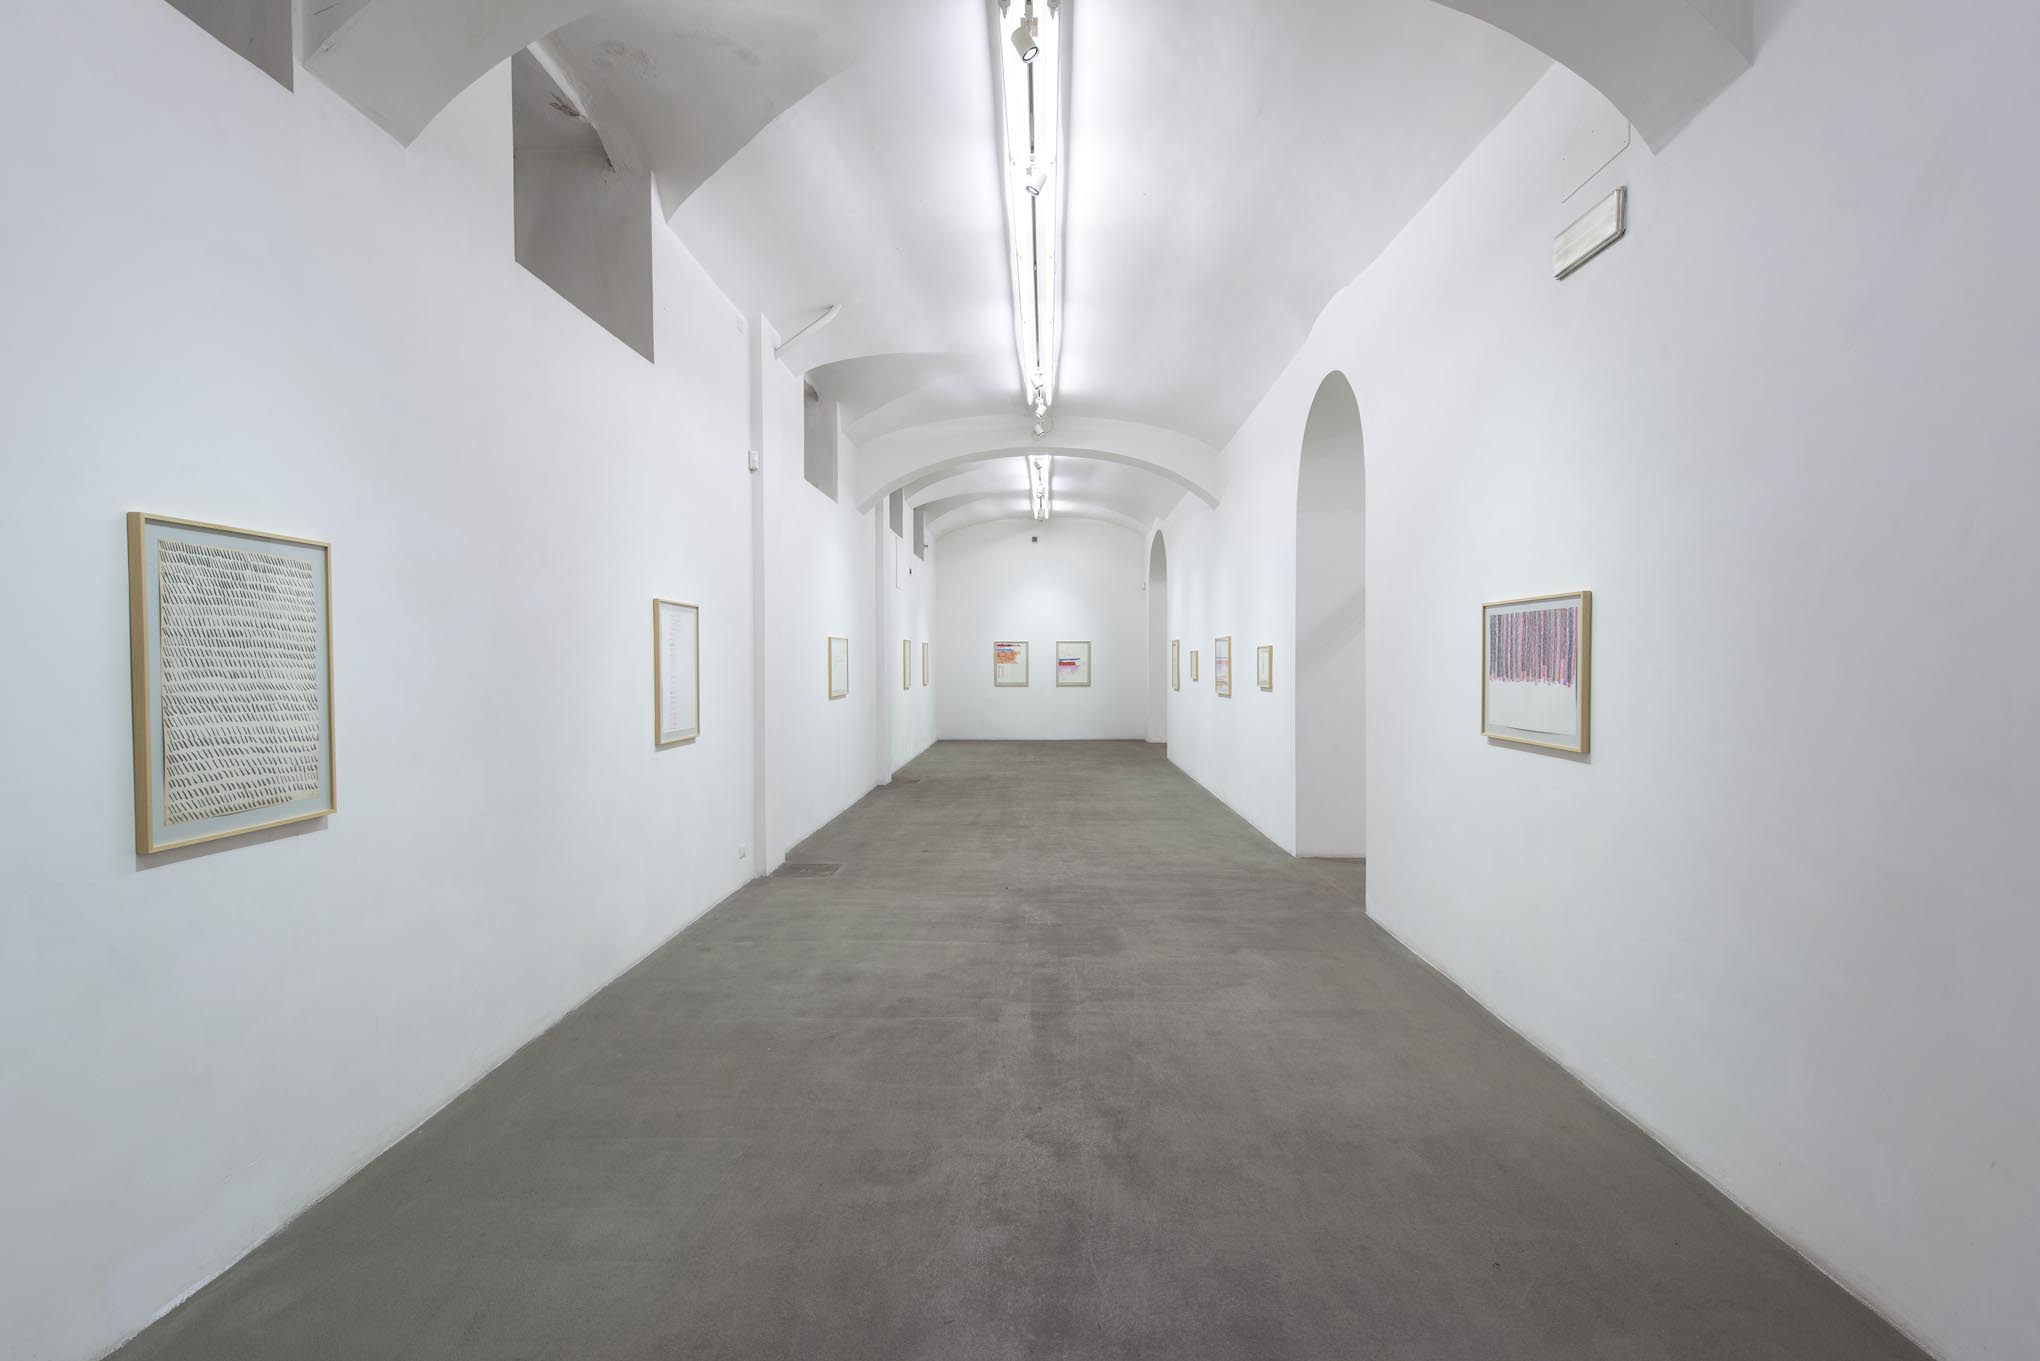 8. Giorgio Griffa: Works on Paper
Installation view, Roma, 2014, foto Giorgio Benni